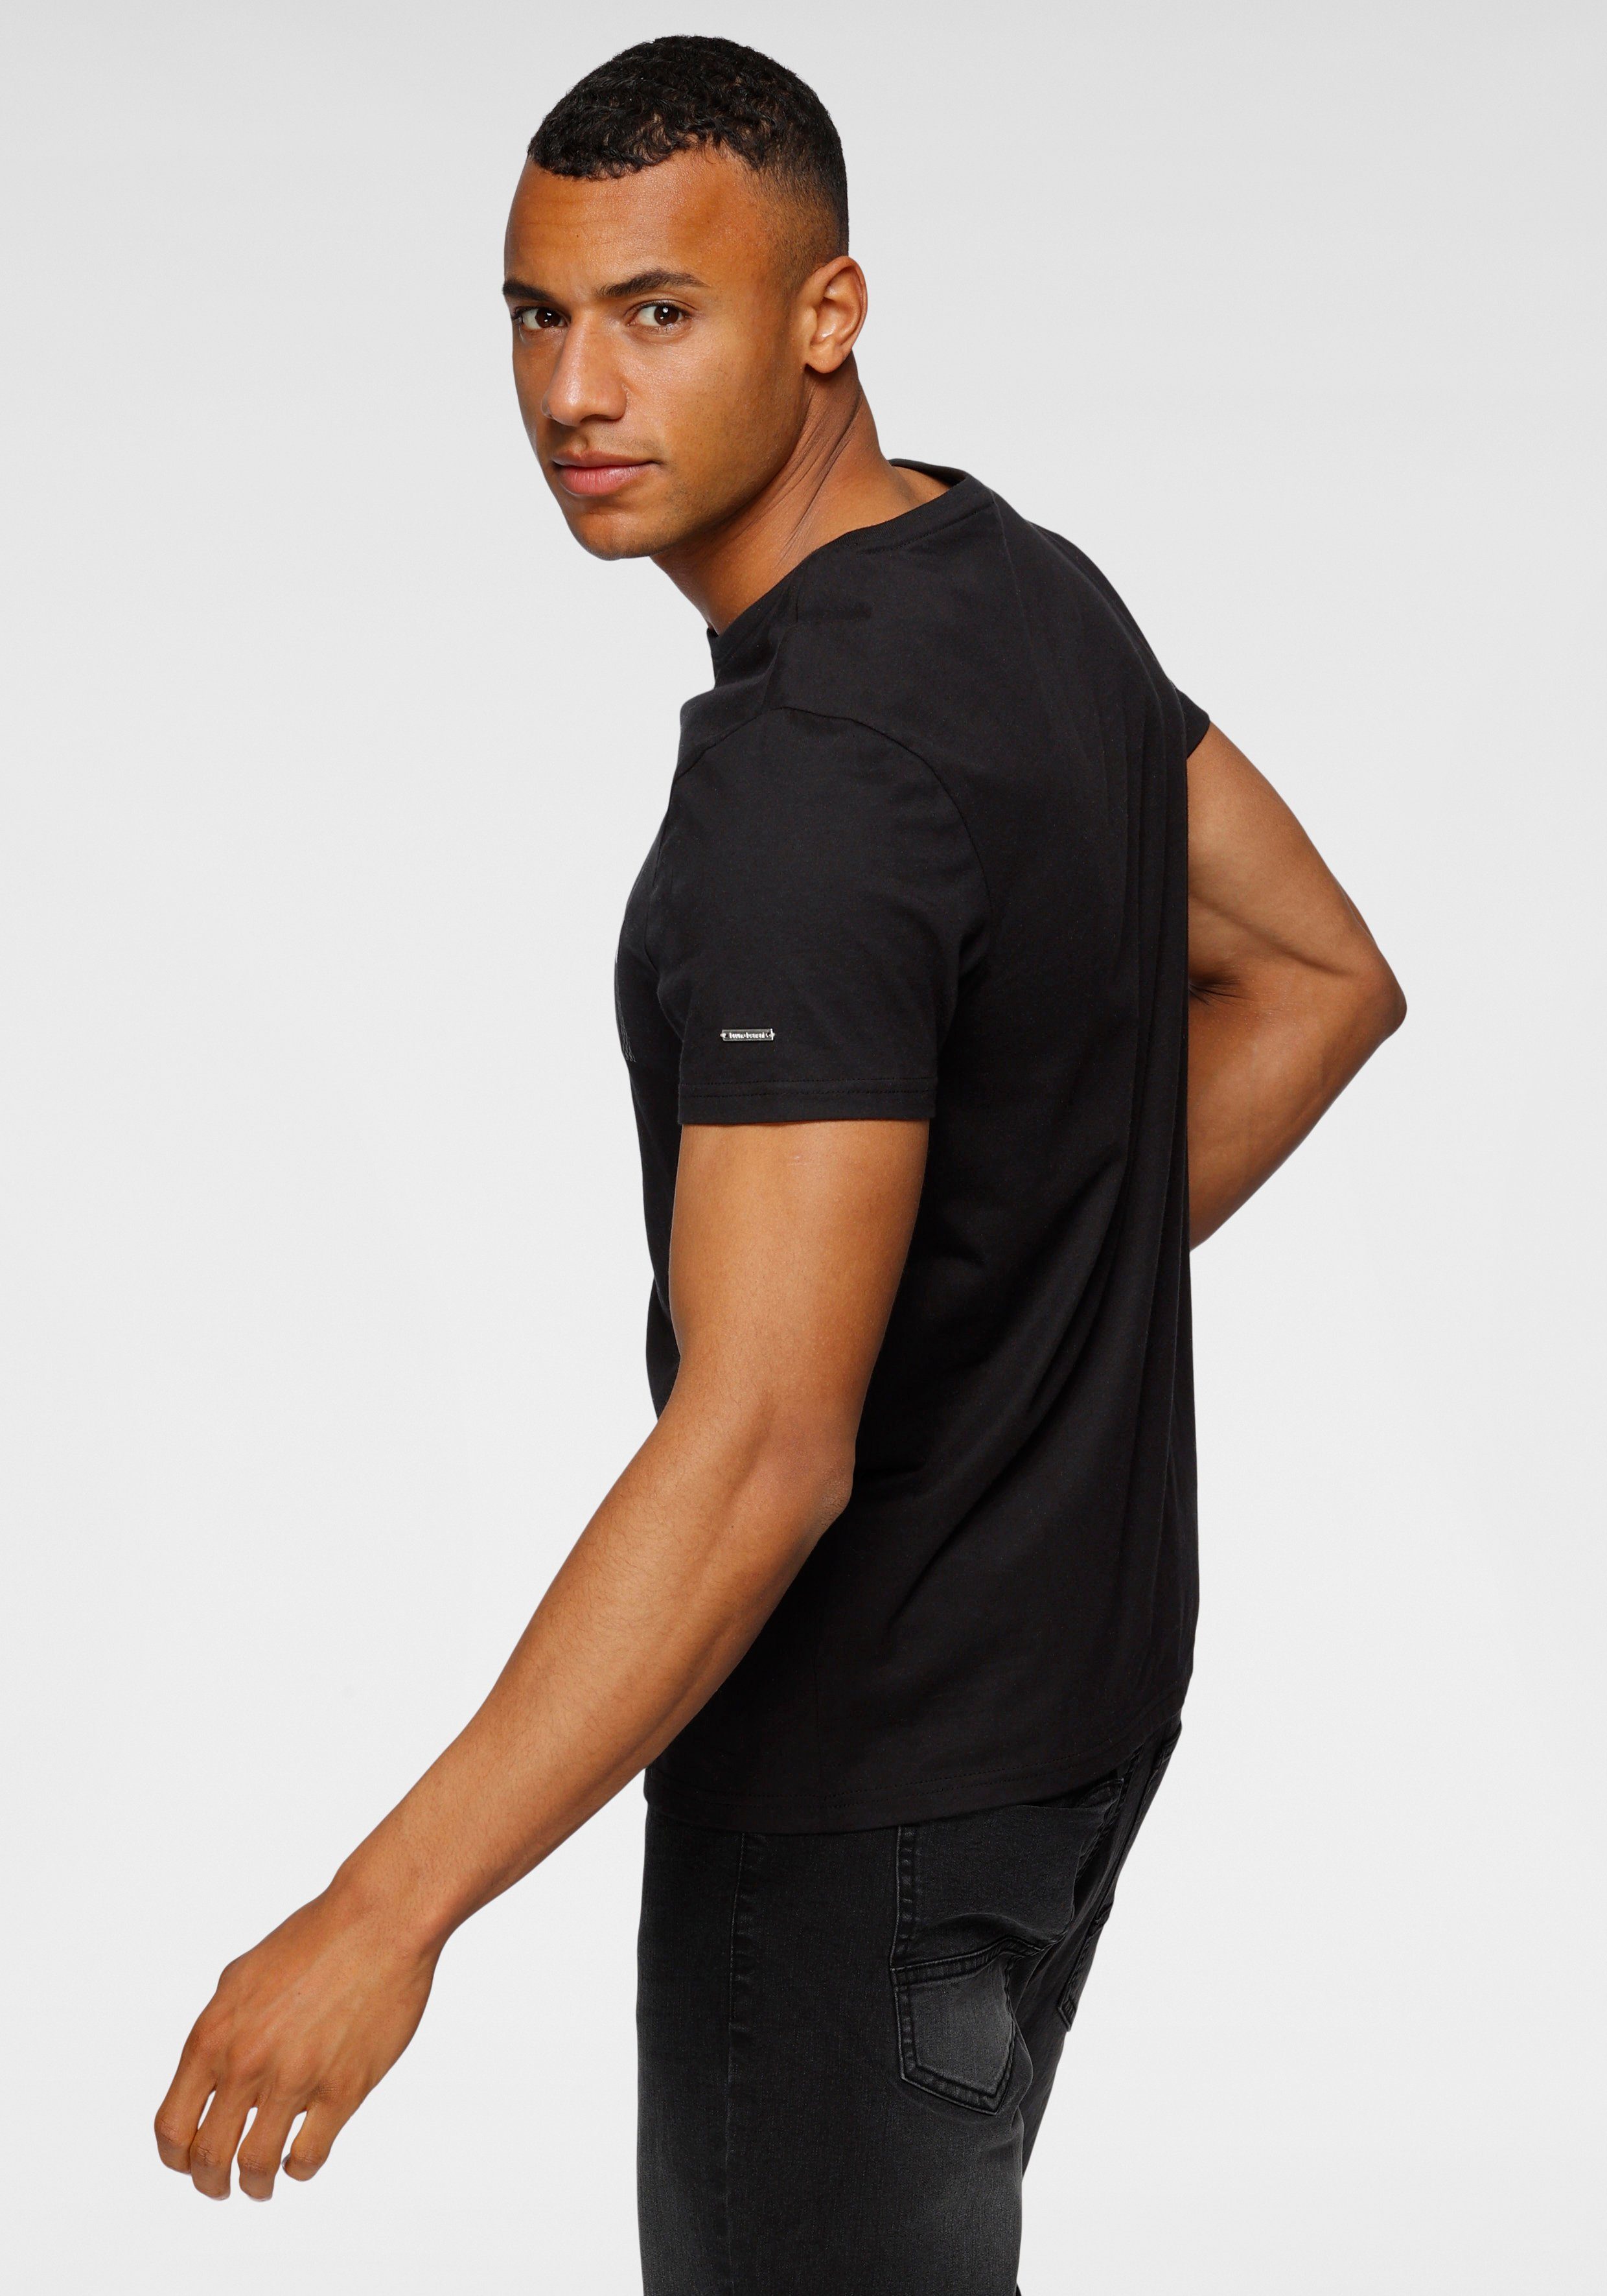 Bruno Print schwarz T-Shirt mit Banani glänzendem